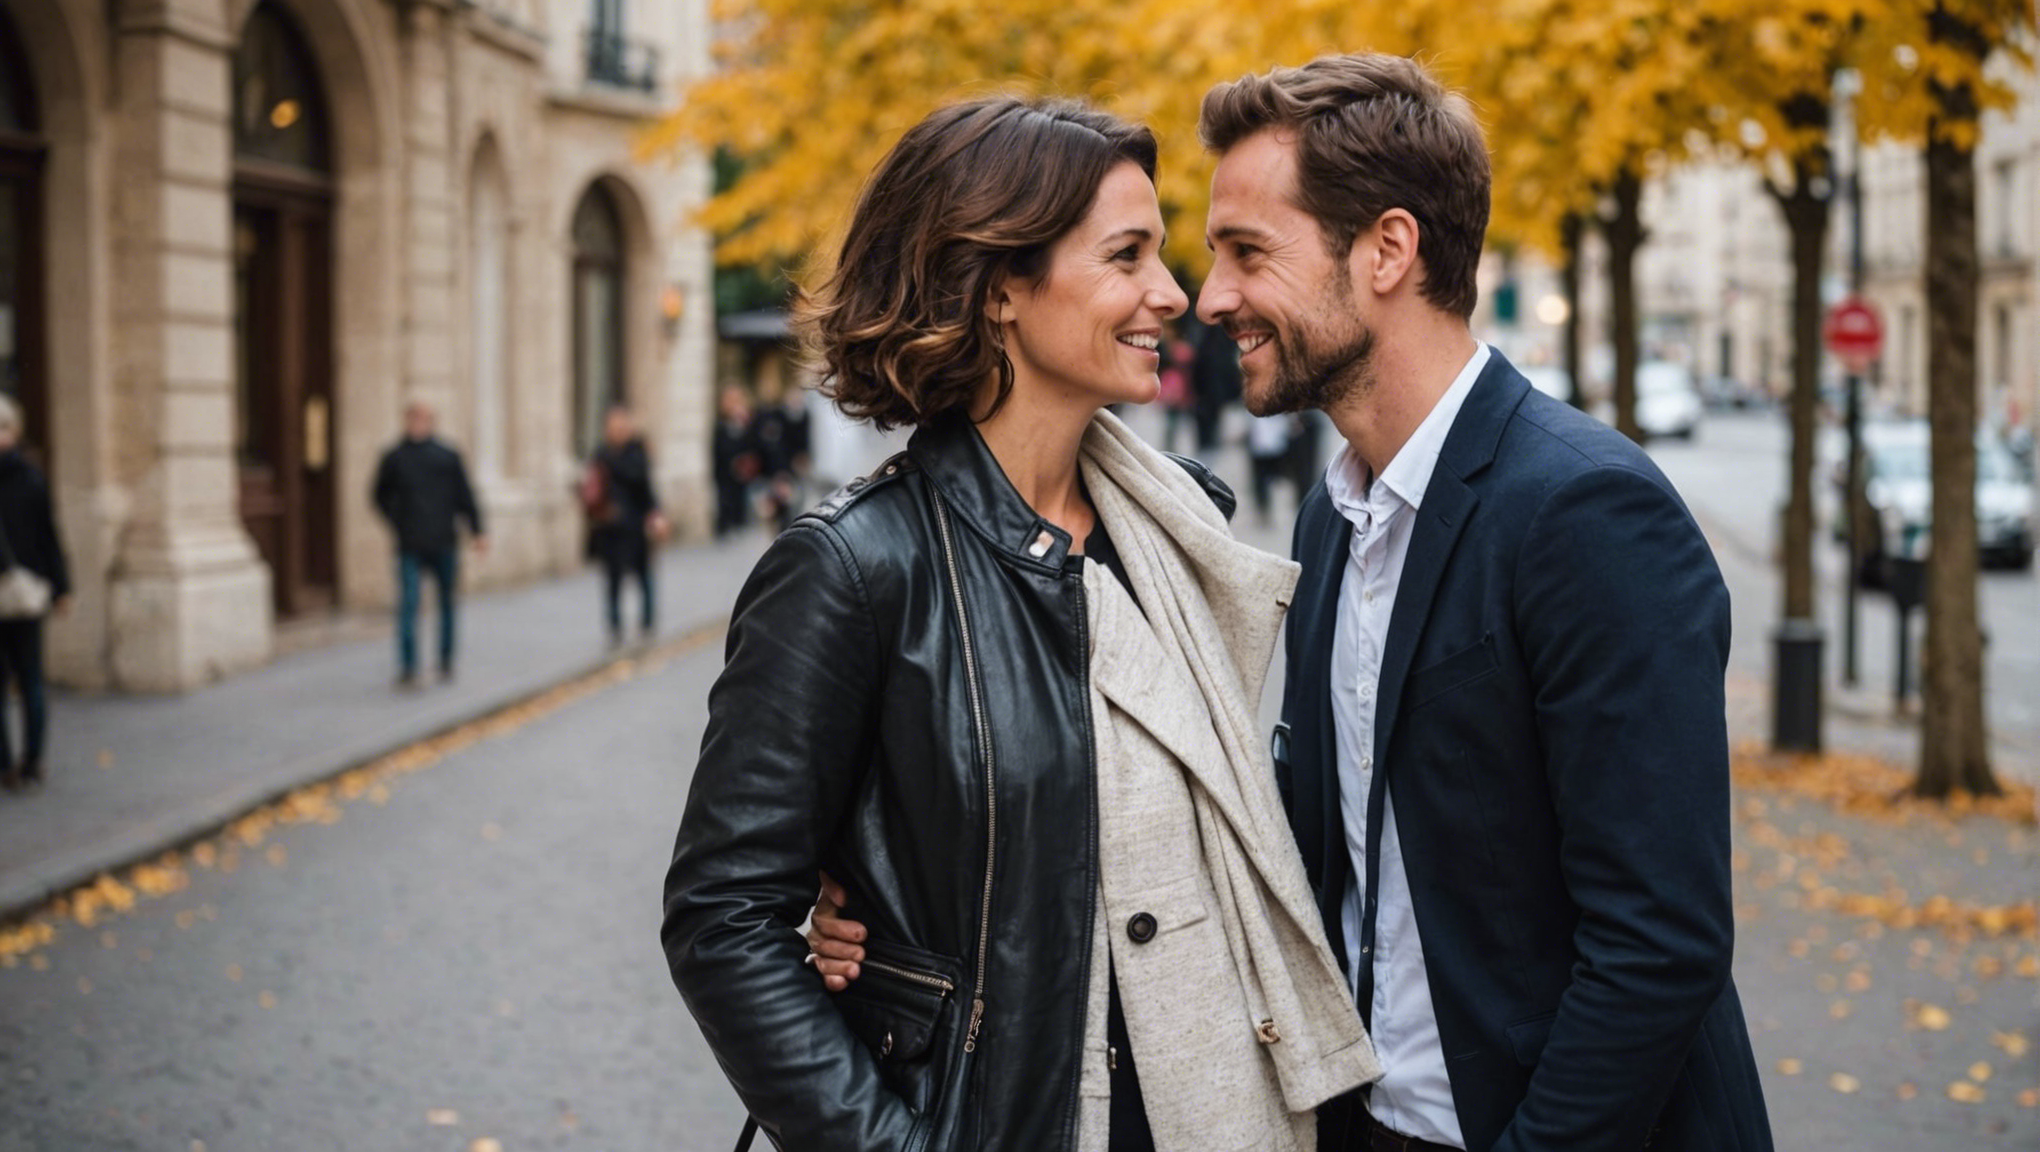 découvrez comment évaluer votre bonheur en couple et trouver des réponses à la question de savoir si vous êtes heureuse dans votre relation.